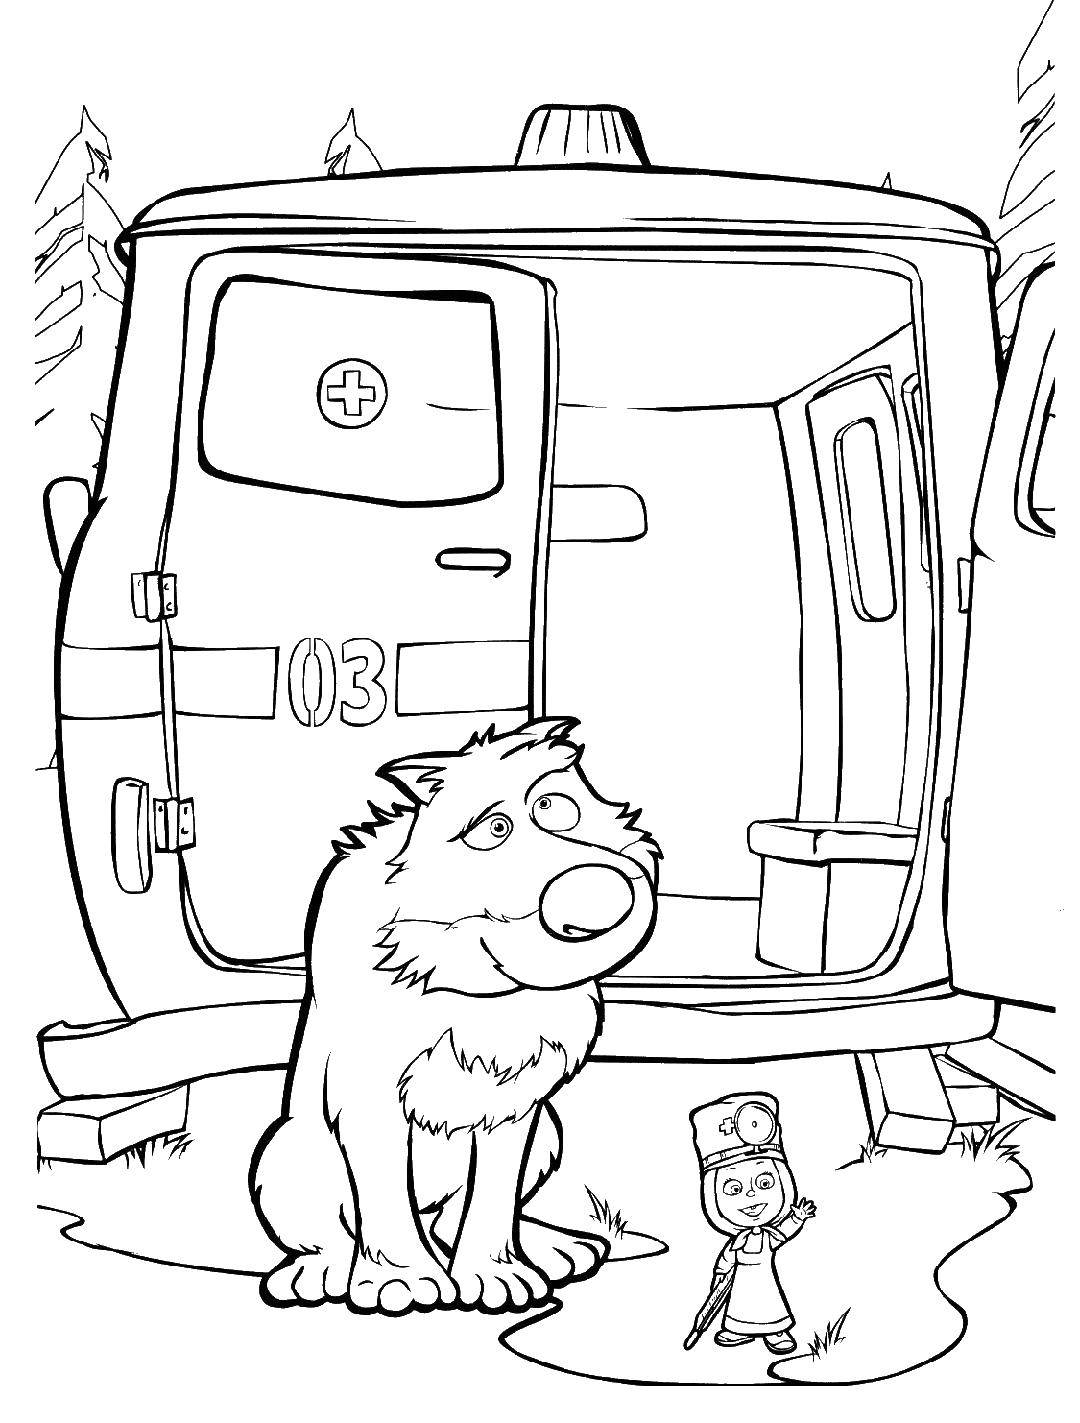 Раскраски для детей про озорную Машу из мультфильма Маша и медведь  Маша лечит волка